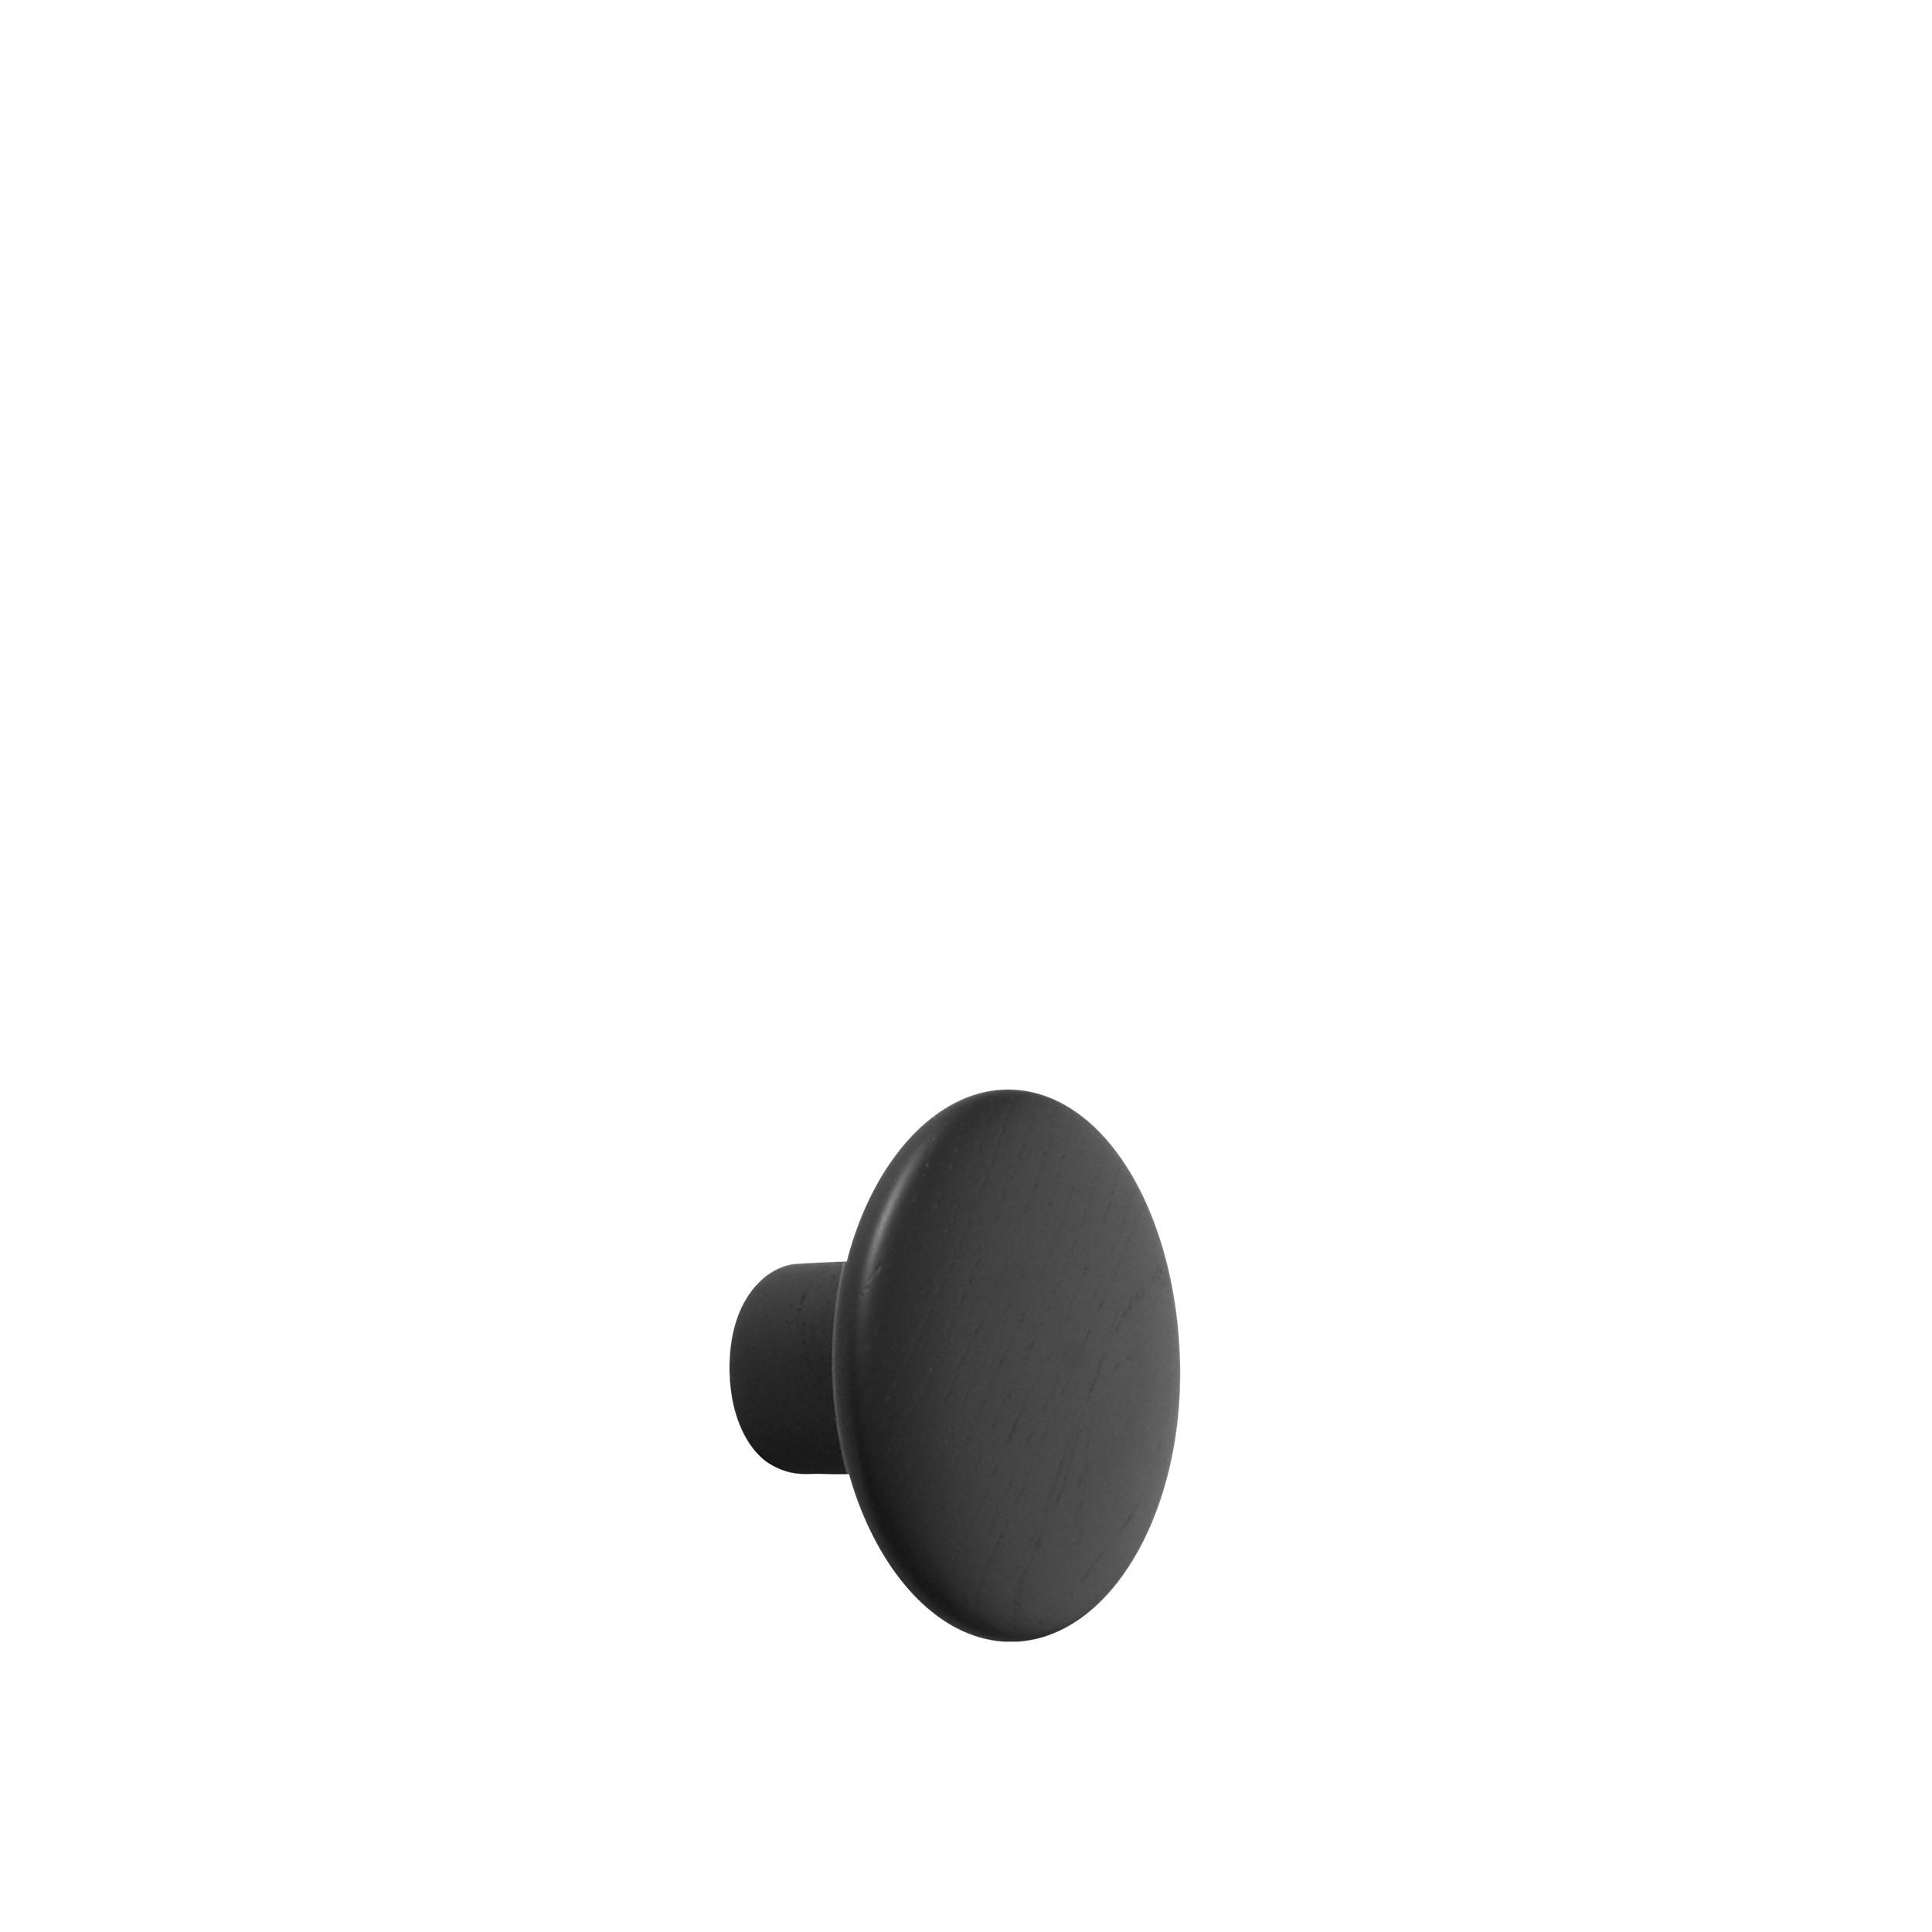 Dot wood small Ø 9 cm black